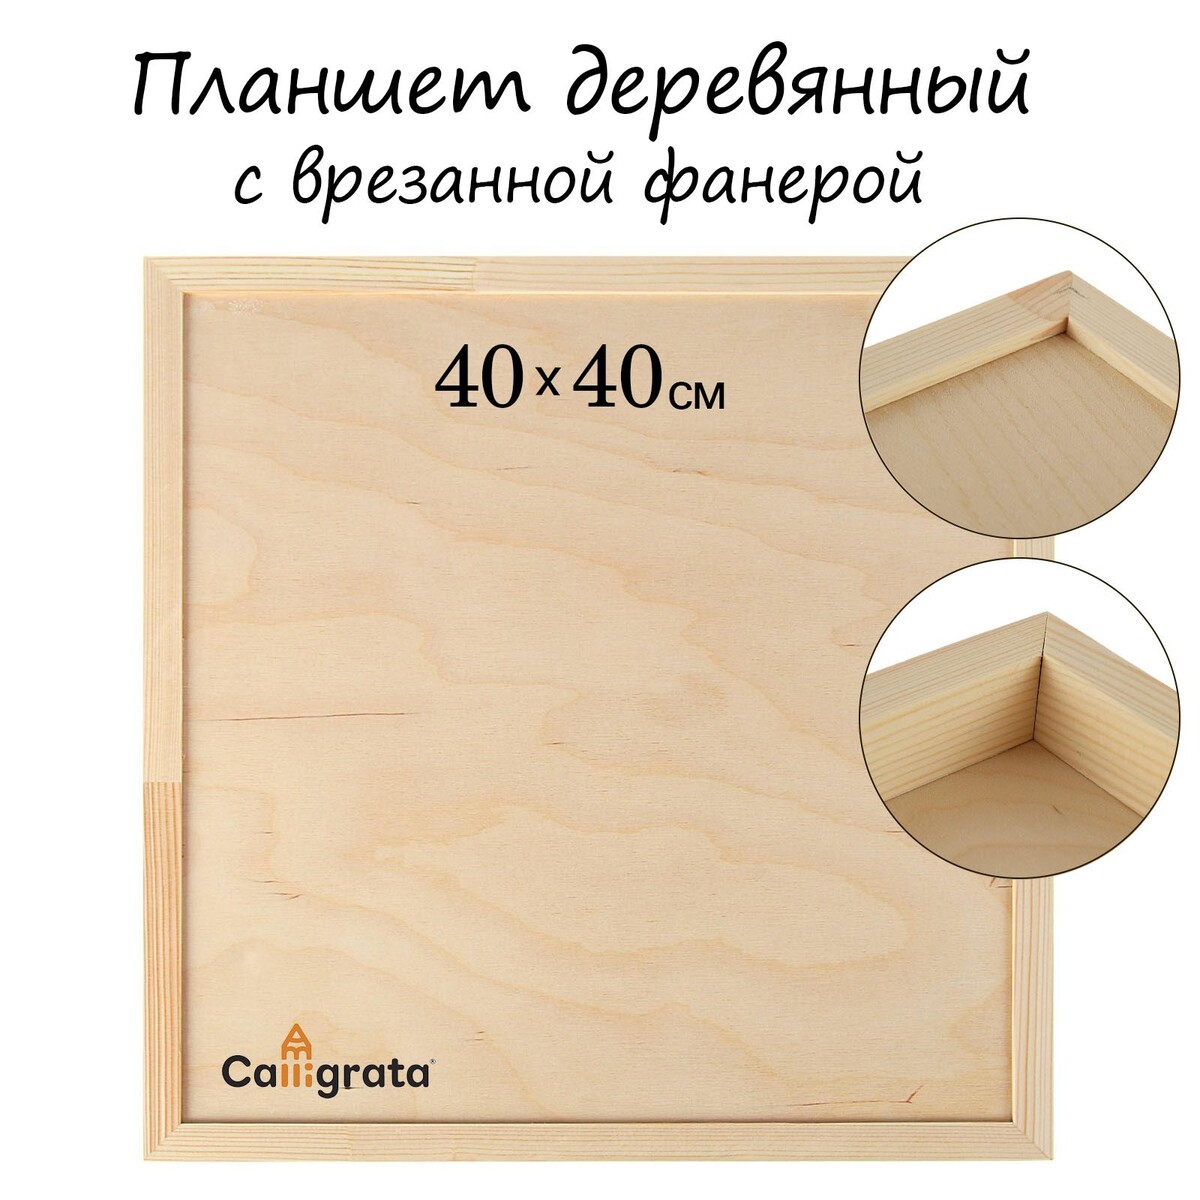 Планшет деревянный, с врезанной фанерой, 40 х 40 х 3,5 см, глубина 0.5 см, сосна планшет деревянный с врезанной фанерой 40 х 40 х 3 5 см глубина 0 5 см сосна